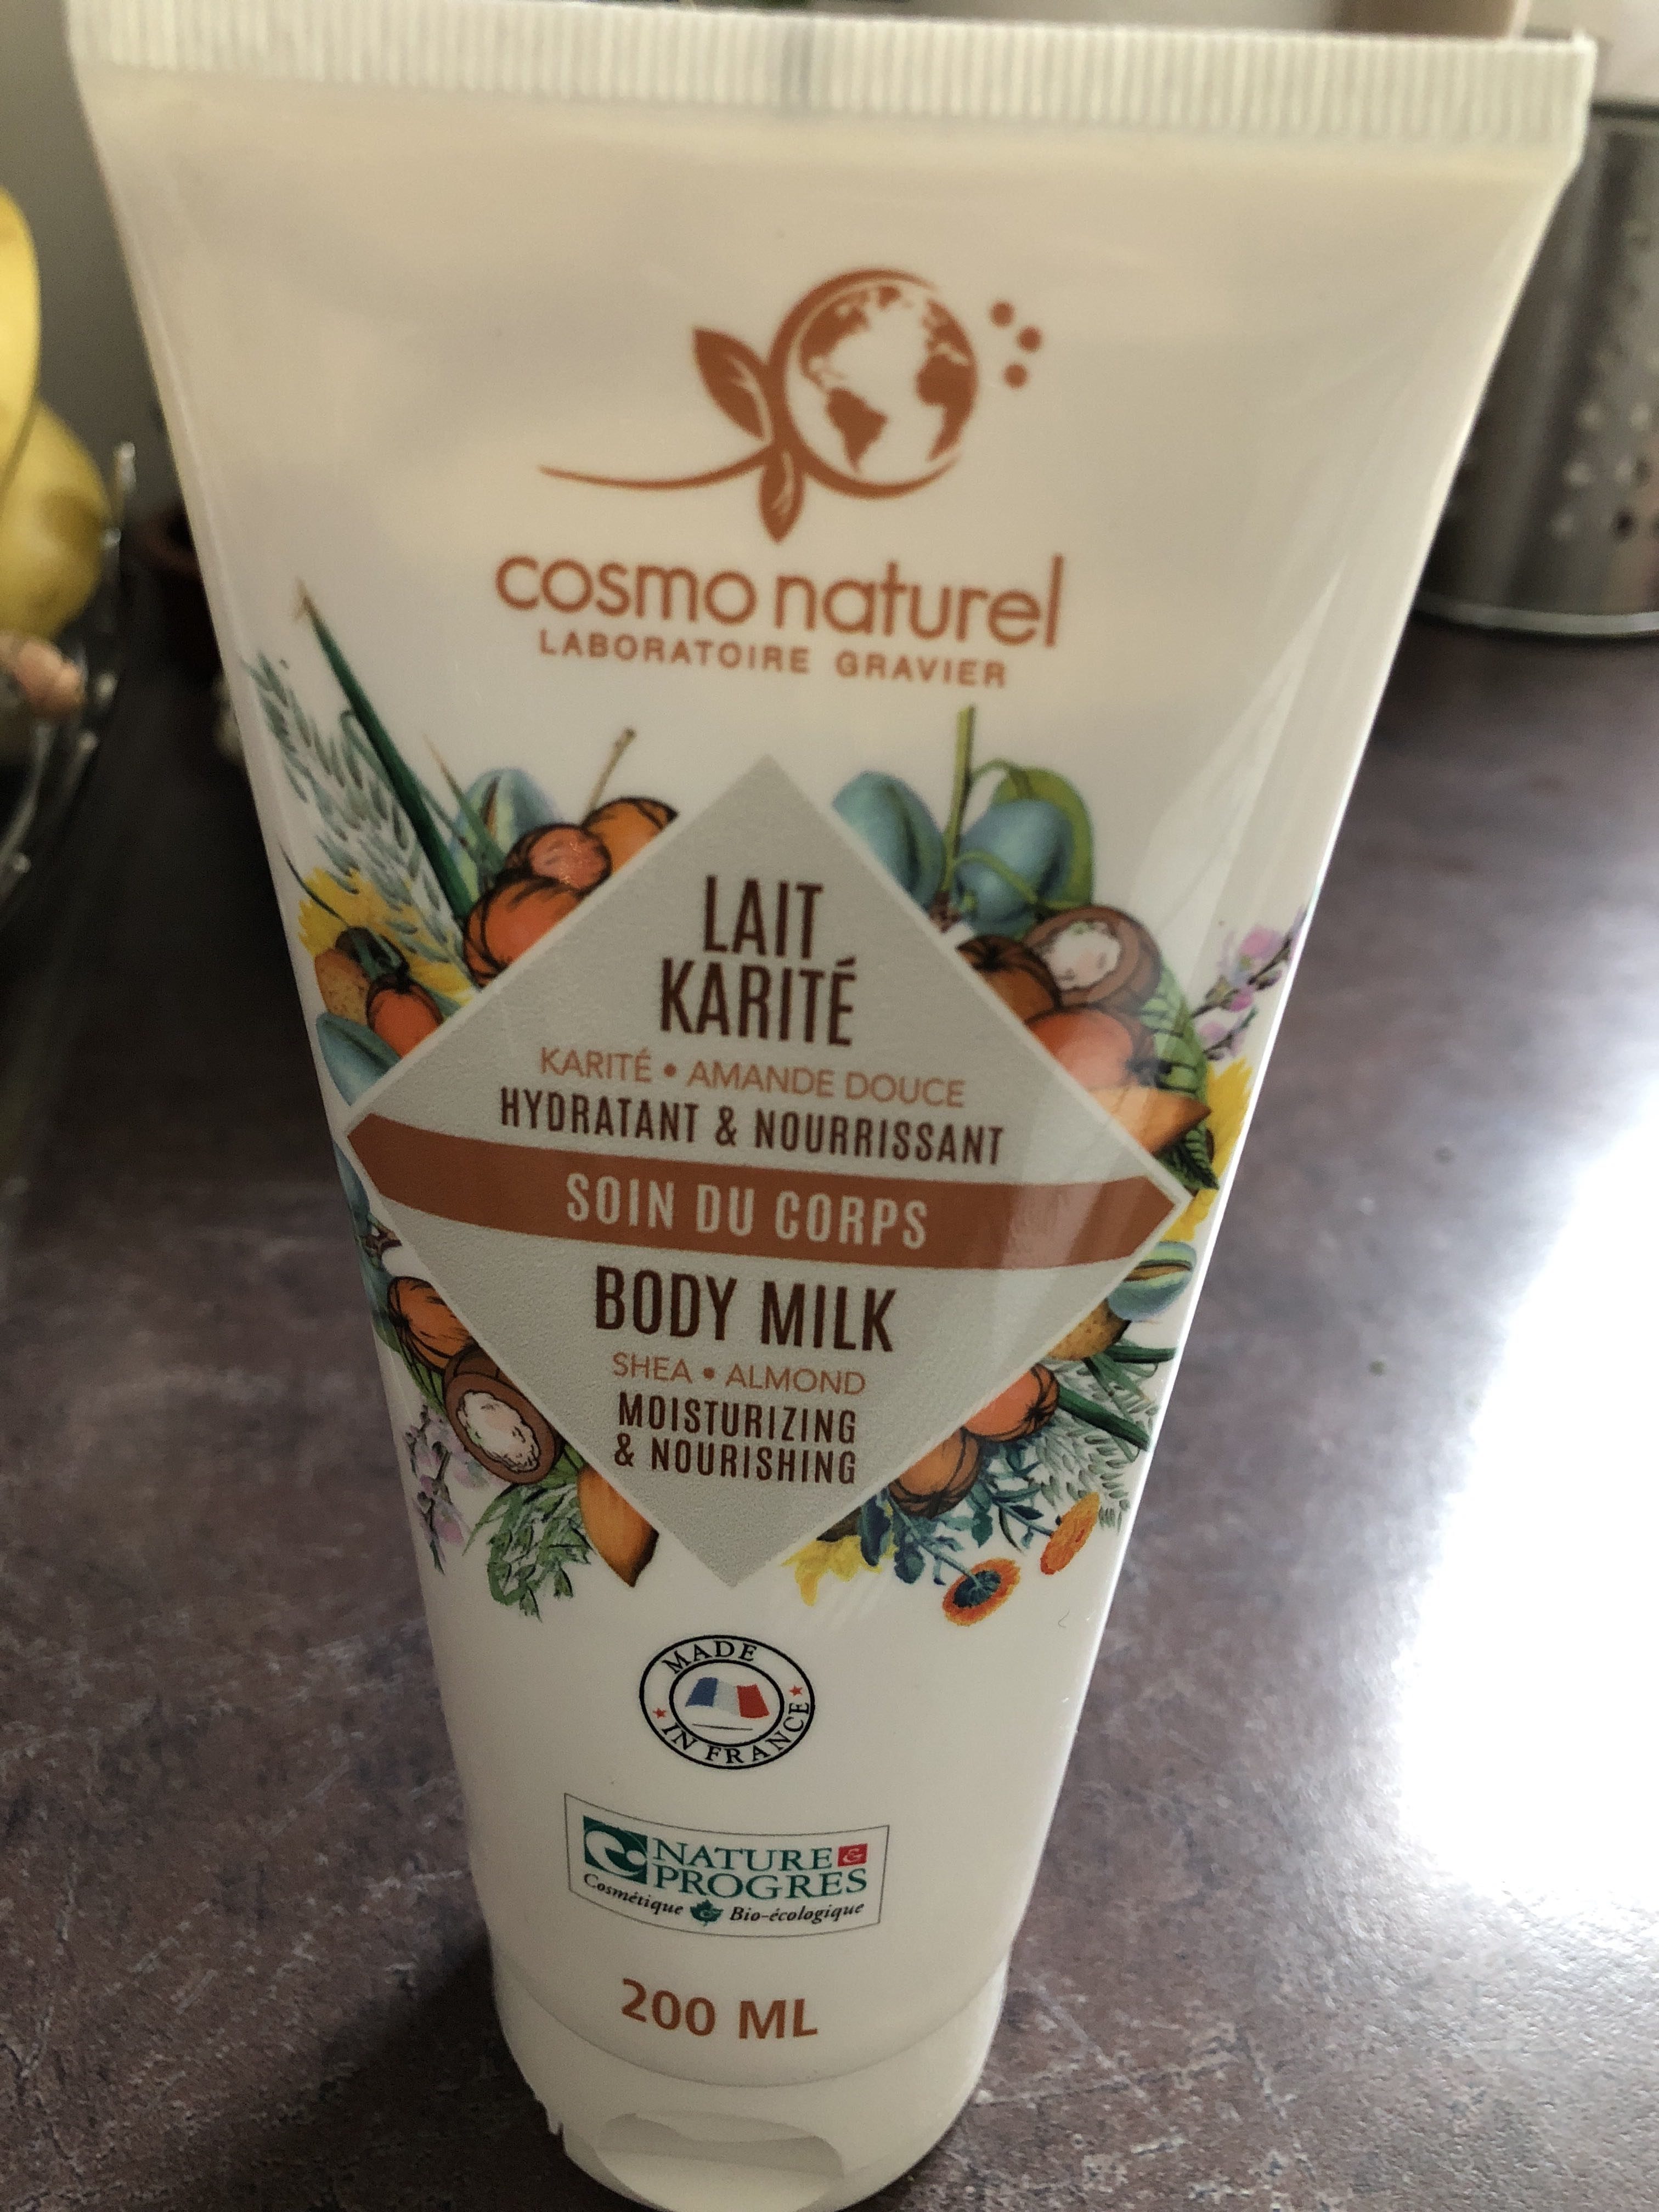 Lait karité body milk - Produit - fr